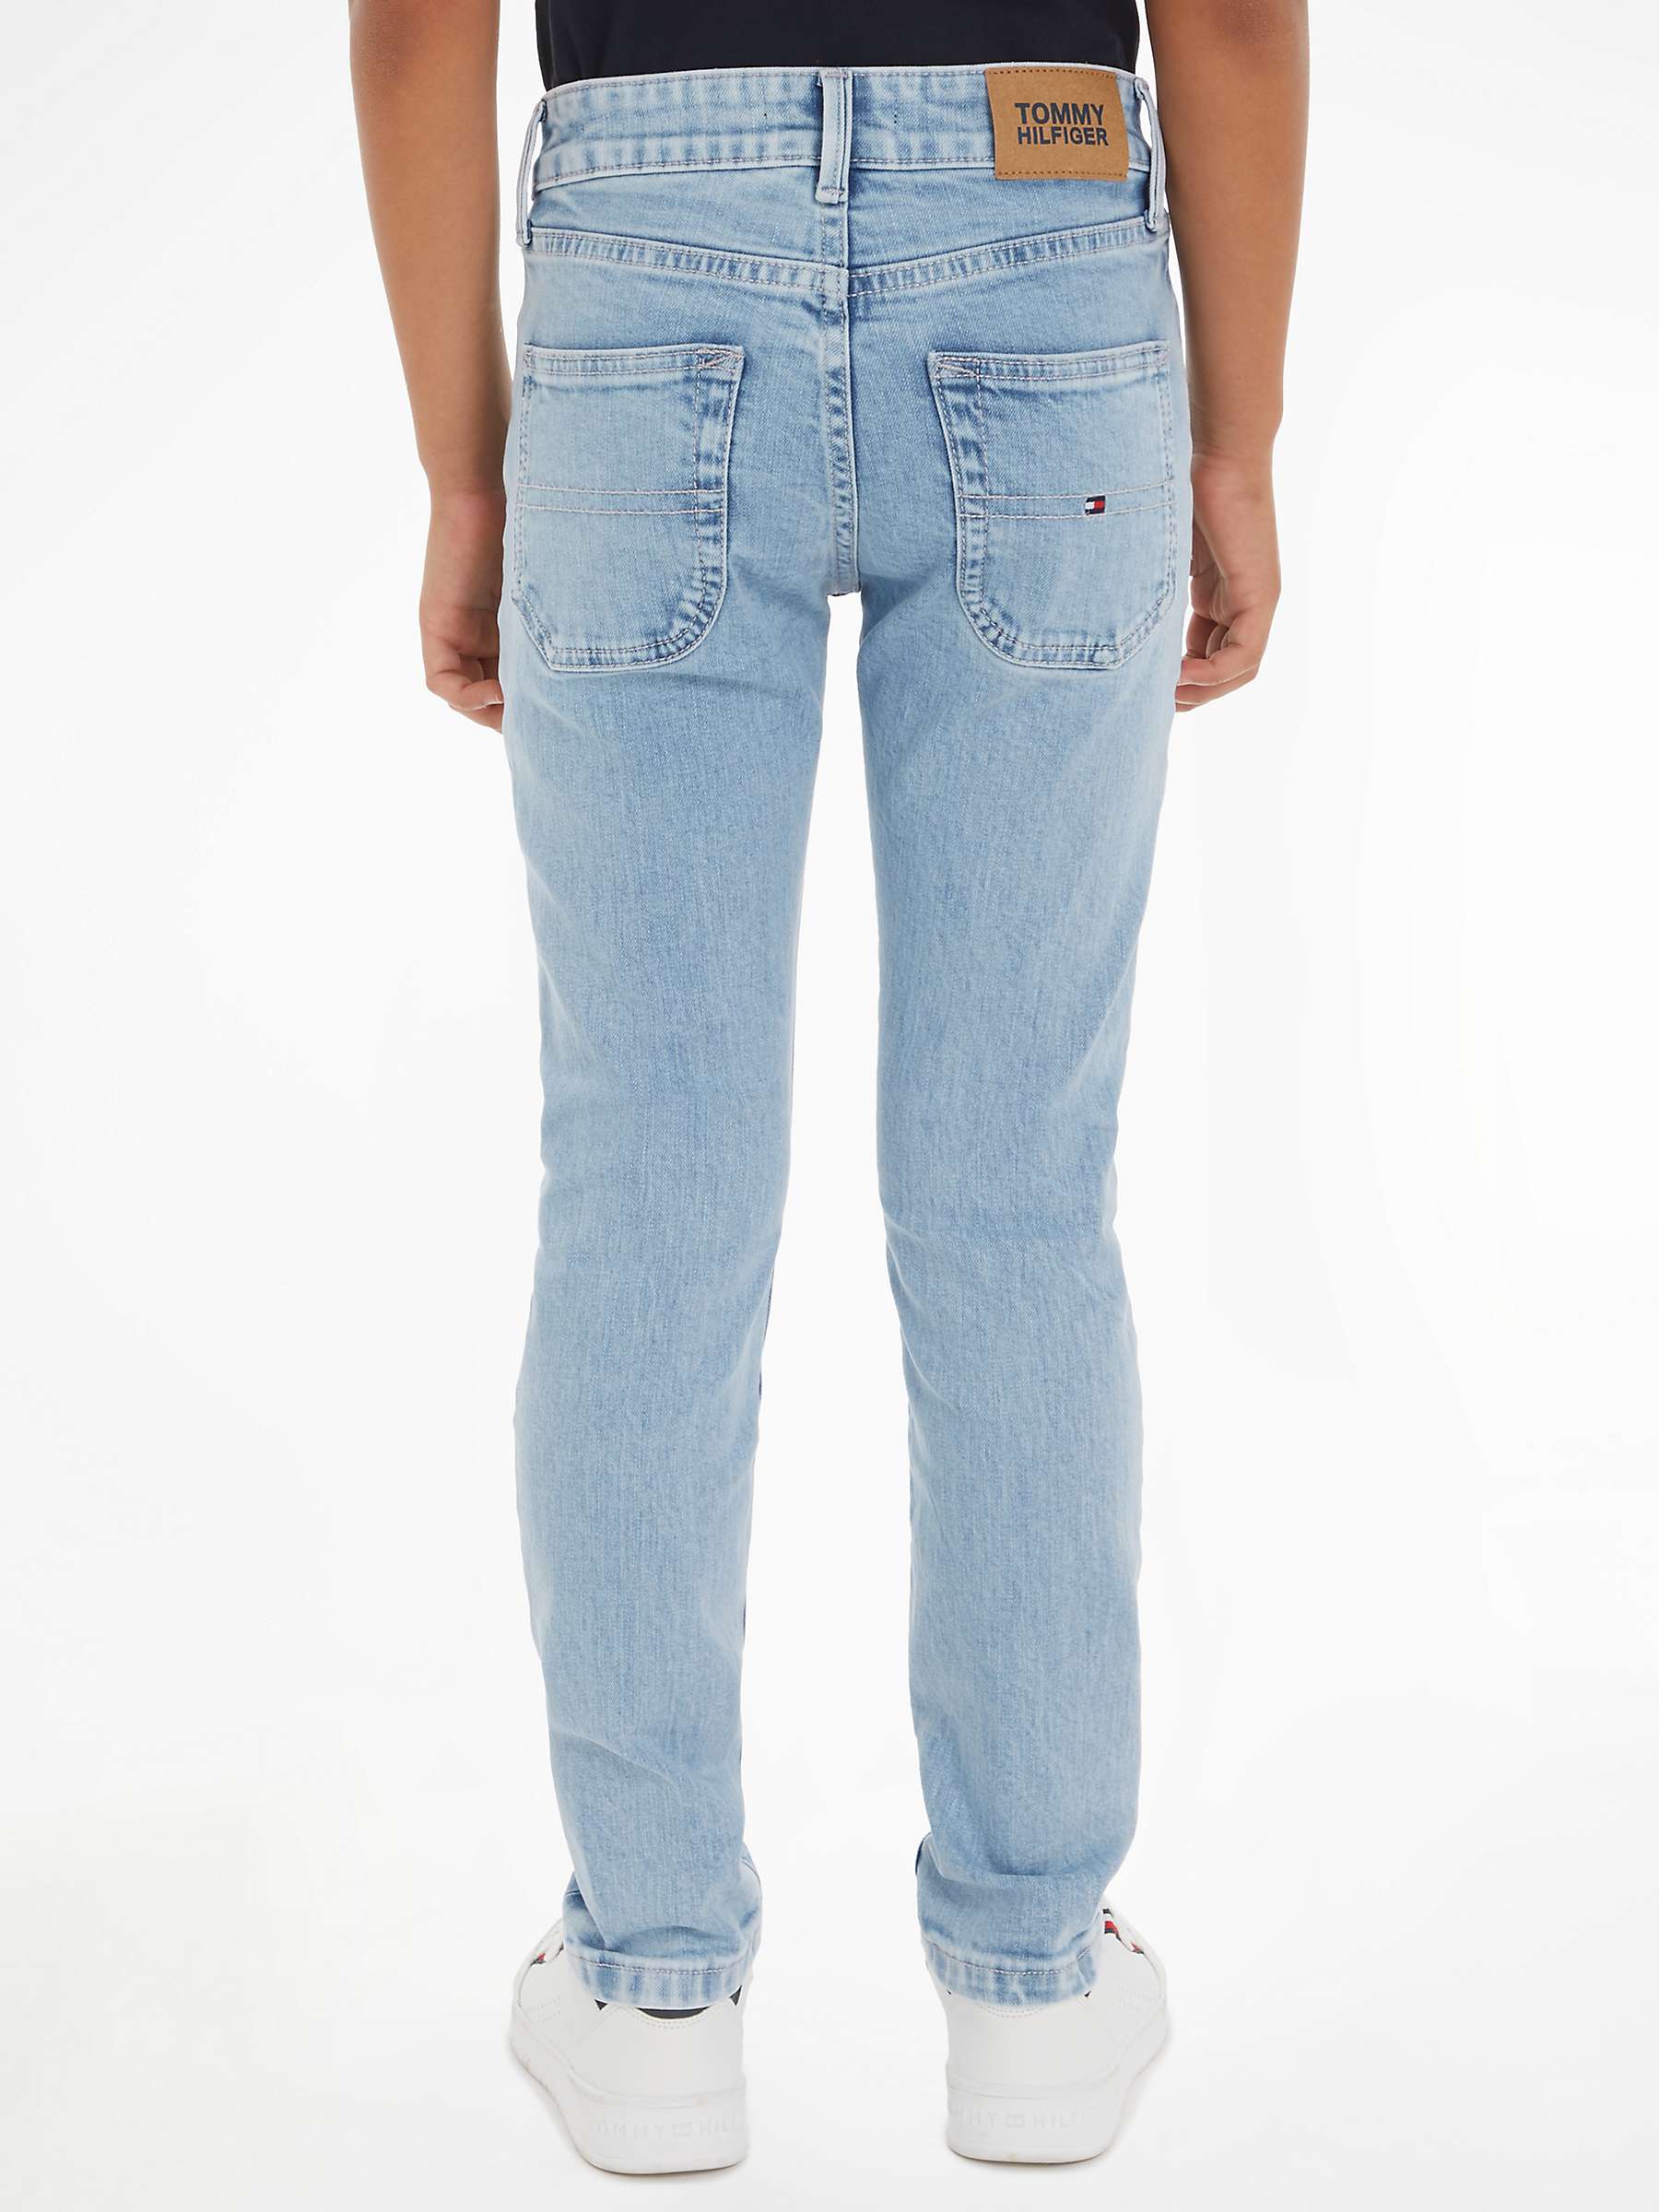 Buy Tommy Hilfiger Kids' Modern Straight Fit Jeans, Salt & Pepper Light Online at johnlewis.com